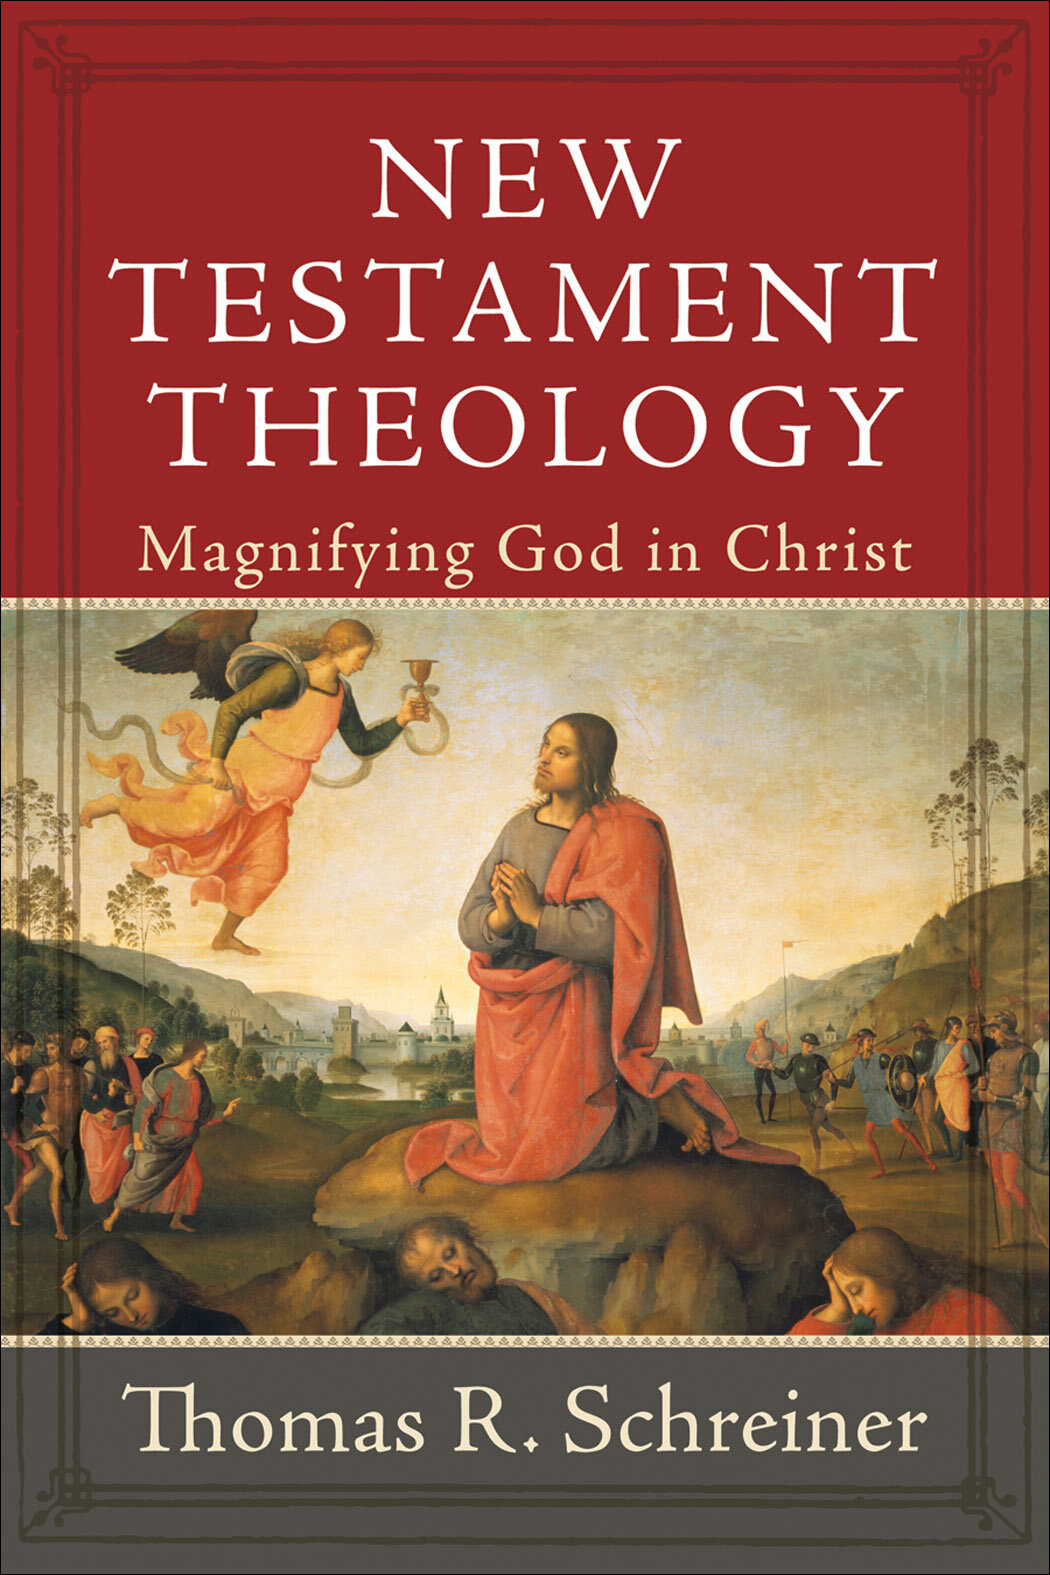 New Testament Theology by Tom Schreiner